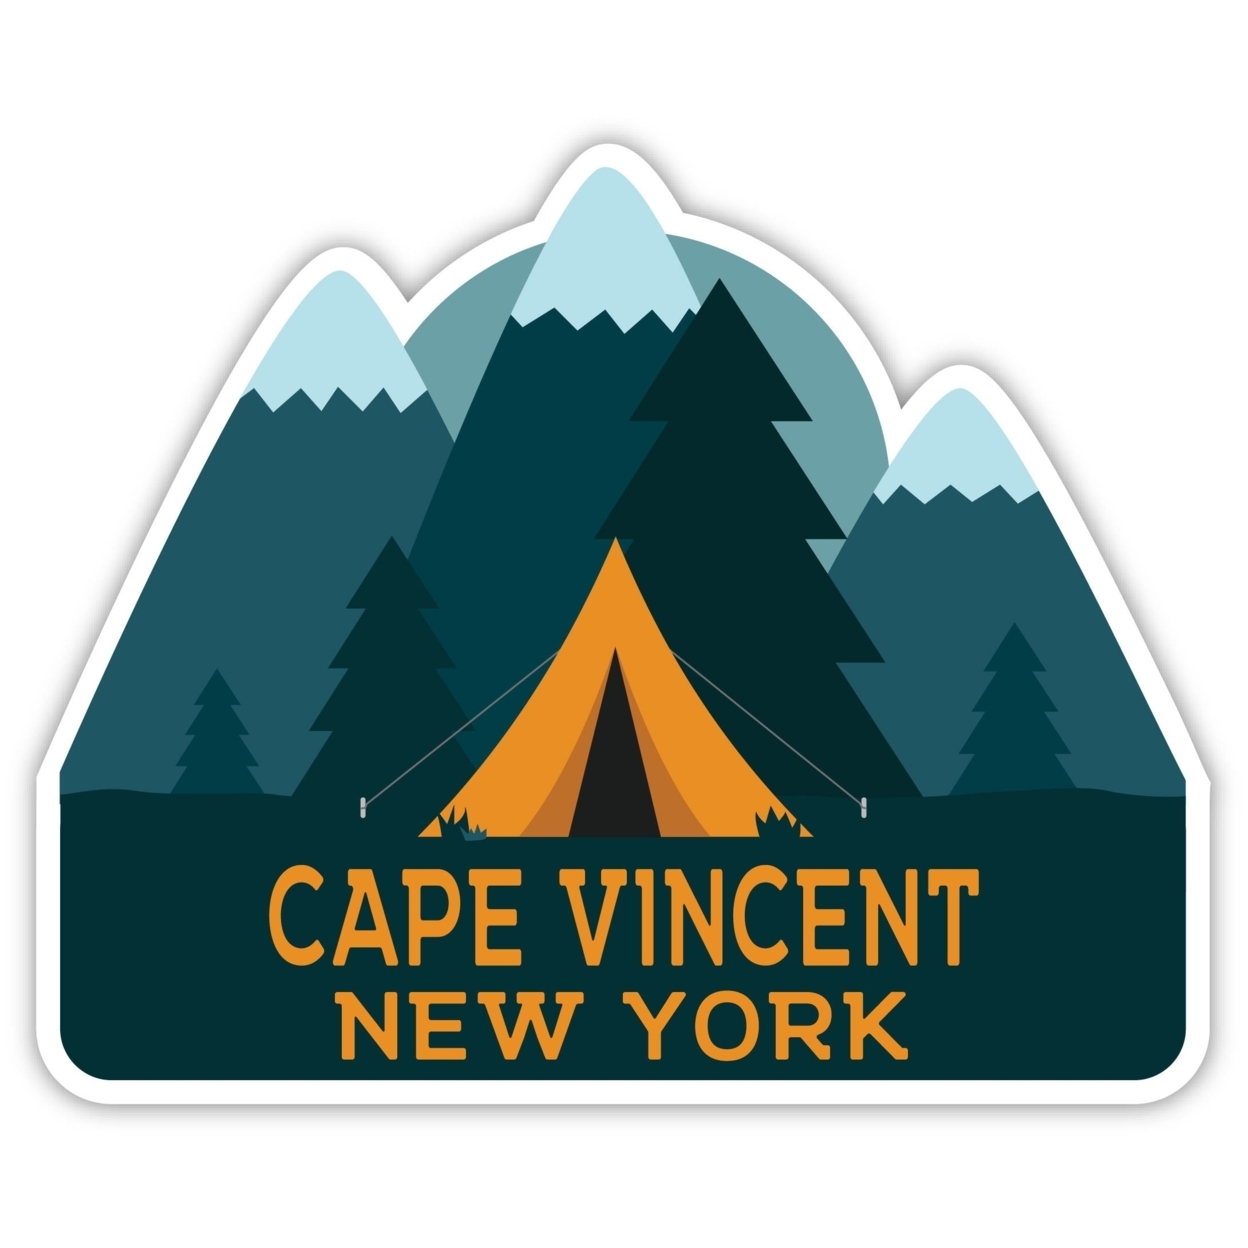 Cape Vincent New York Souvenir Decorative Stickers (Choose Theme And Size) - Single Unit, 2-Inch, Tent